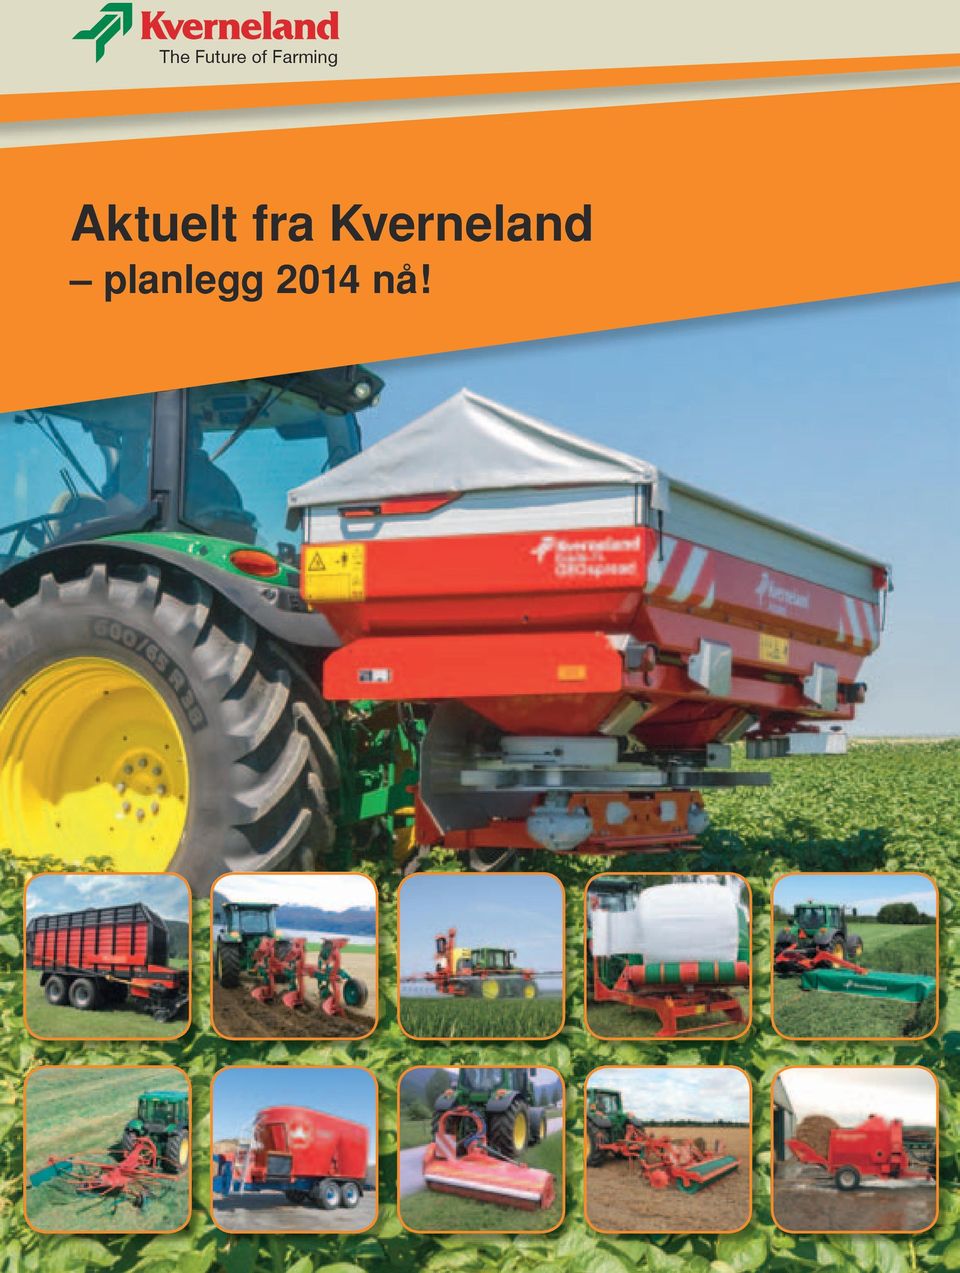 Aktuelt fra Kverneland planlegg 2014 nå! - PDF Gratis nedlasting